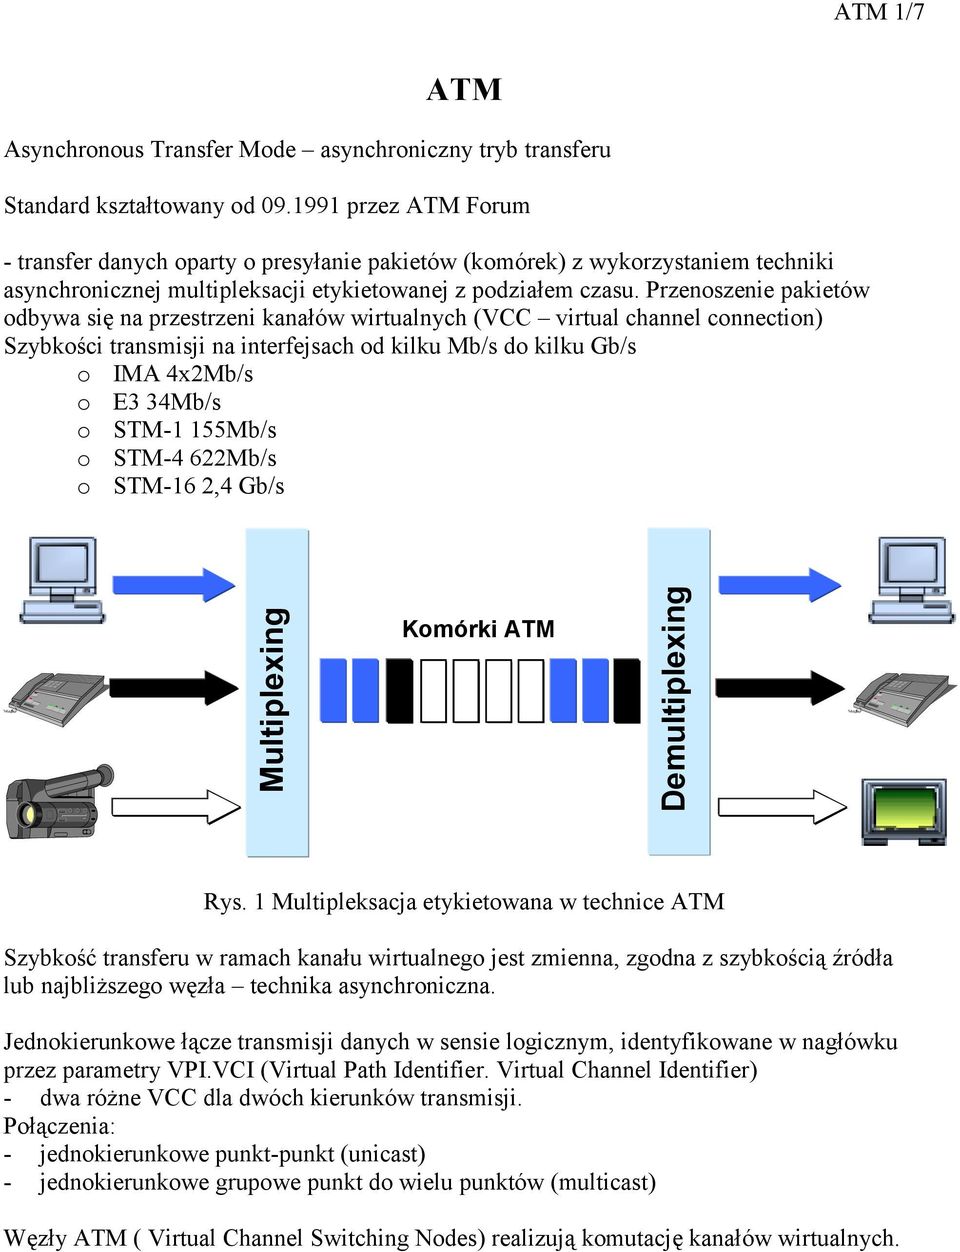 Przenoszenie pakietów odbywa się na przestrzeni kanałów wirtualnych (VCC virtual channel connection) Szybkości transmisji na interfejsach od kilku Mb/s do kilku Gb/s o IMA 4x2Mb/s o E3 34Mb/s o STM-1